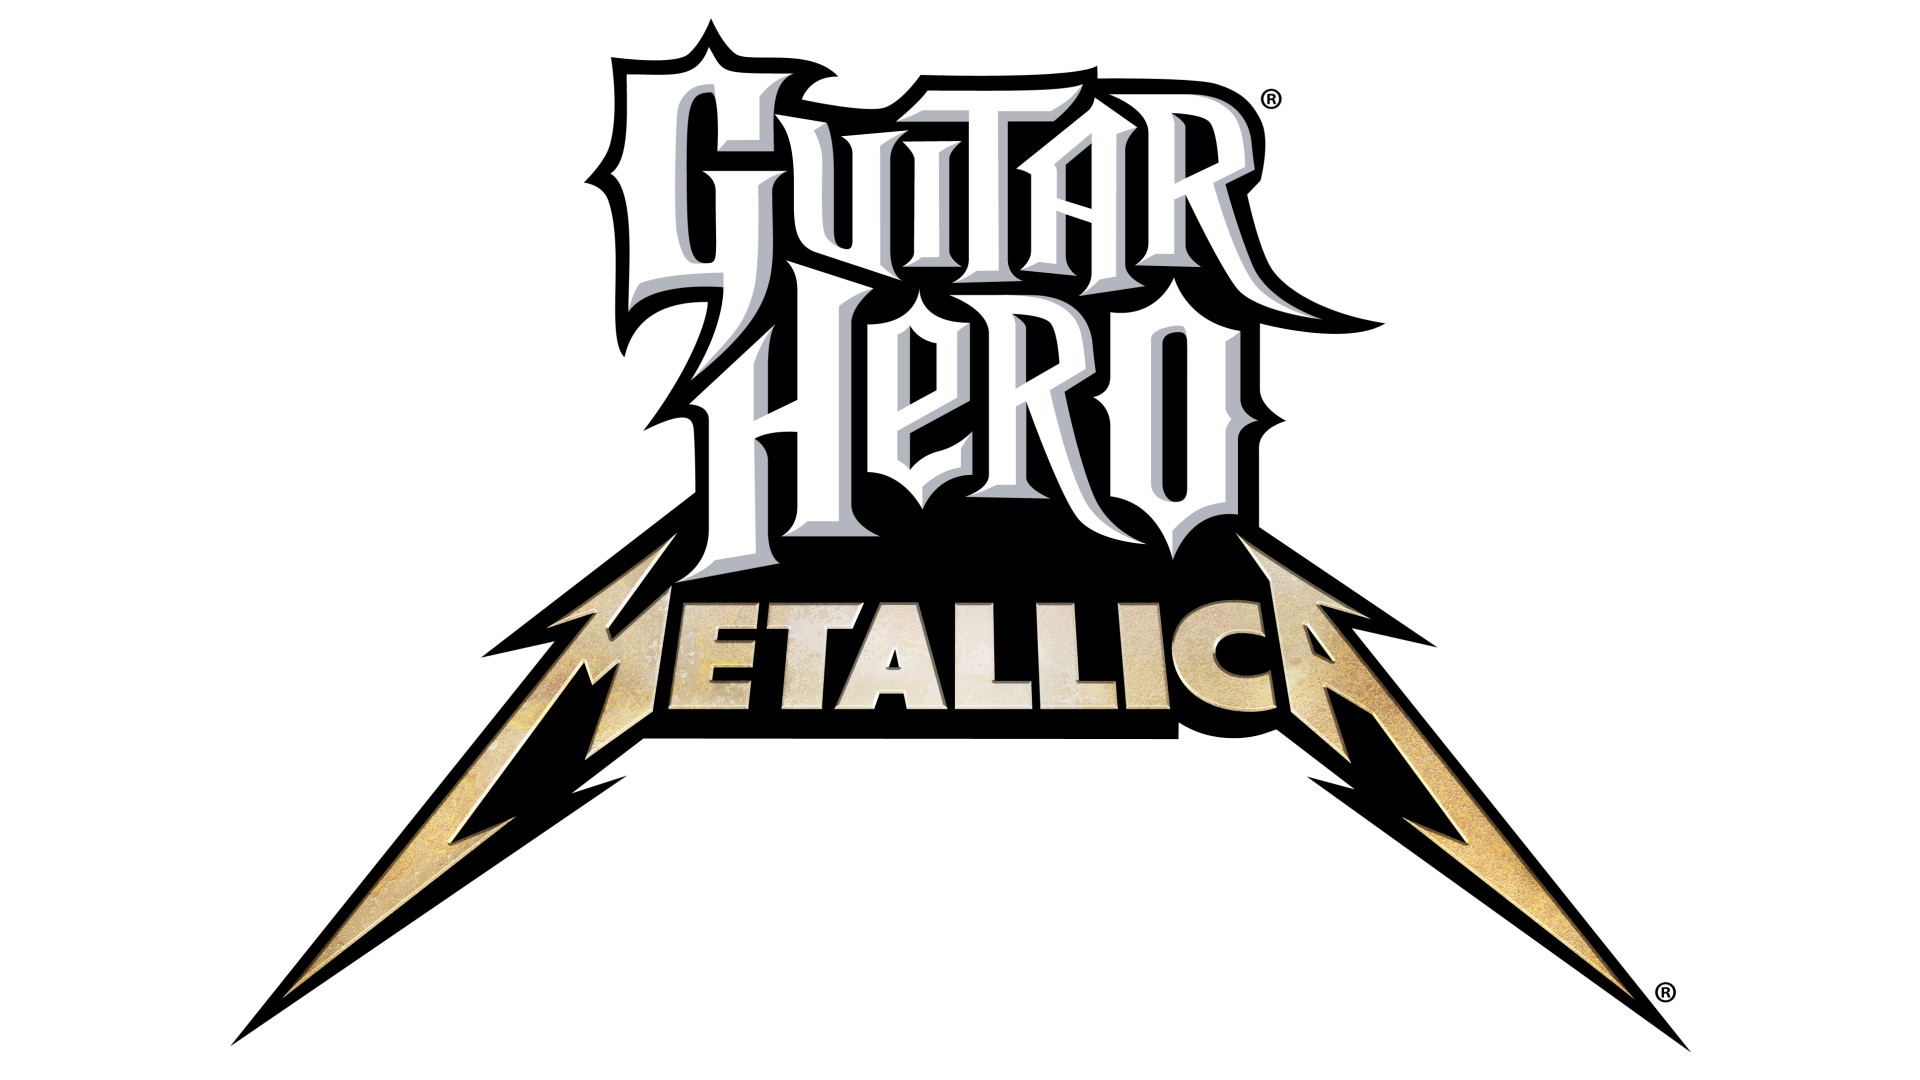 Guitar Hero: Metallica HD Wallpaper